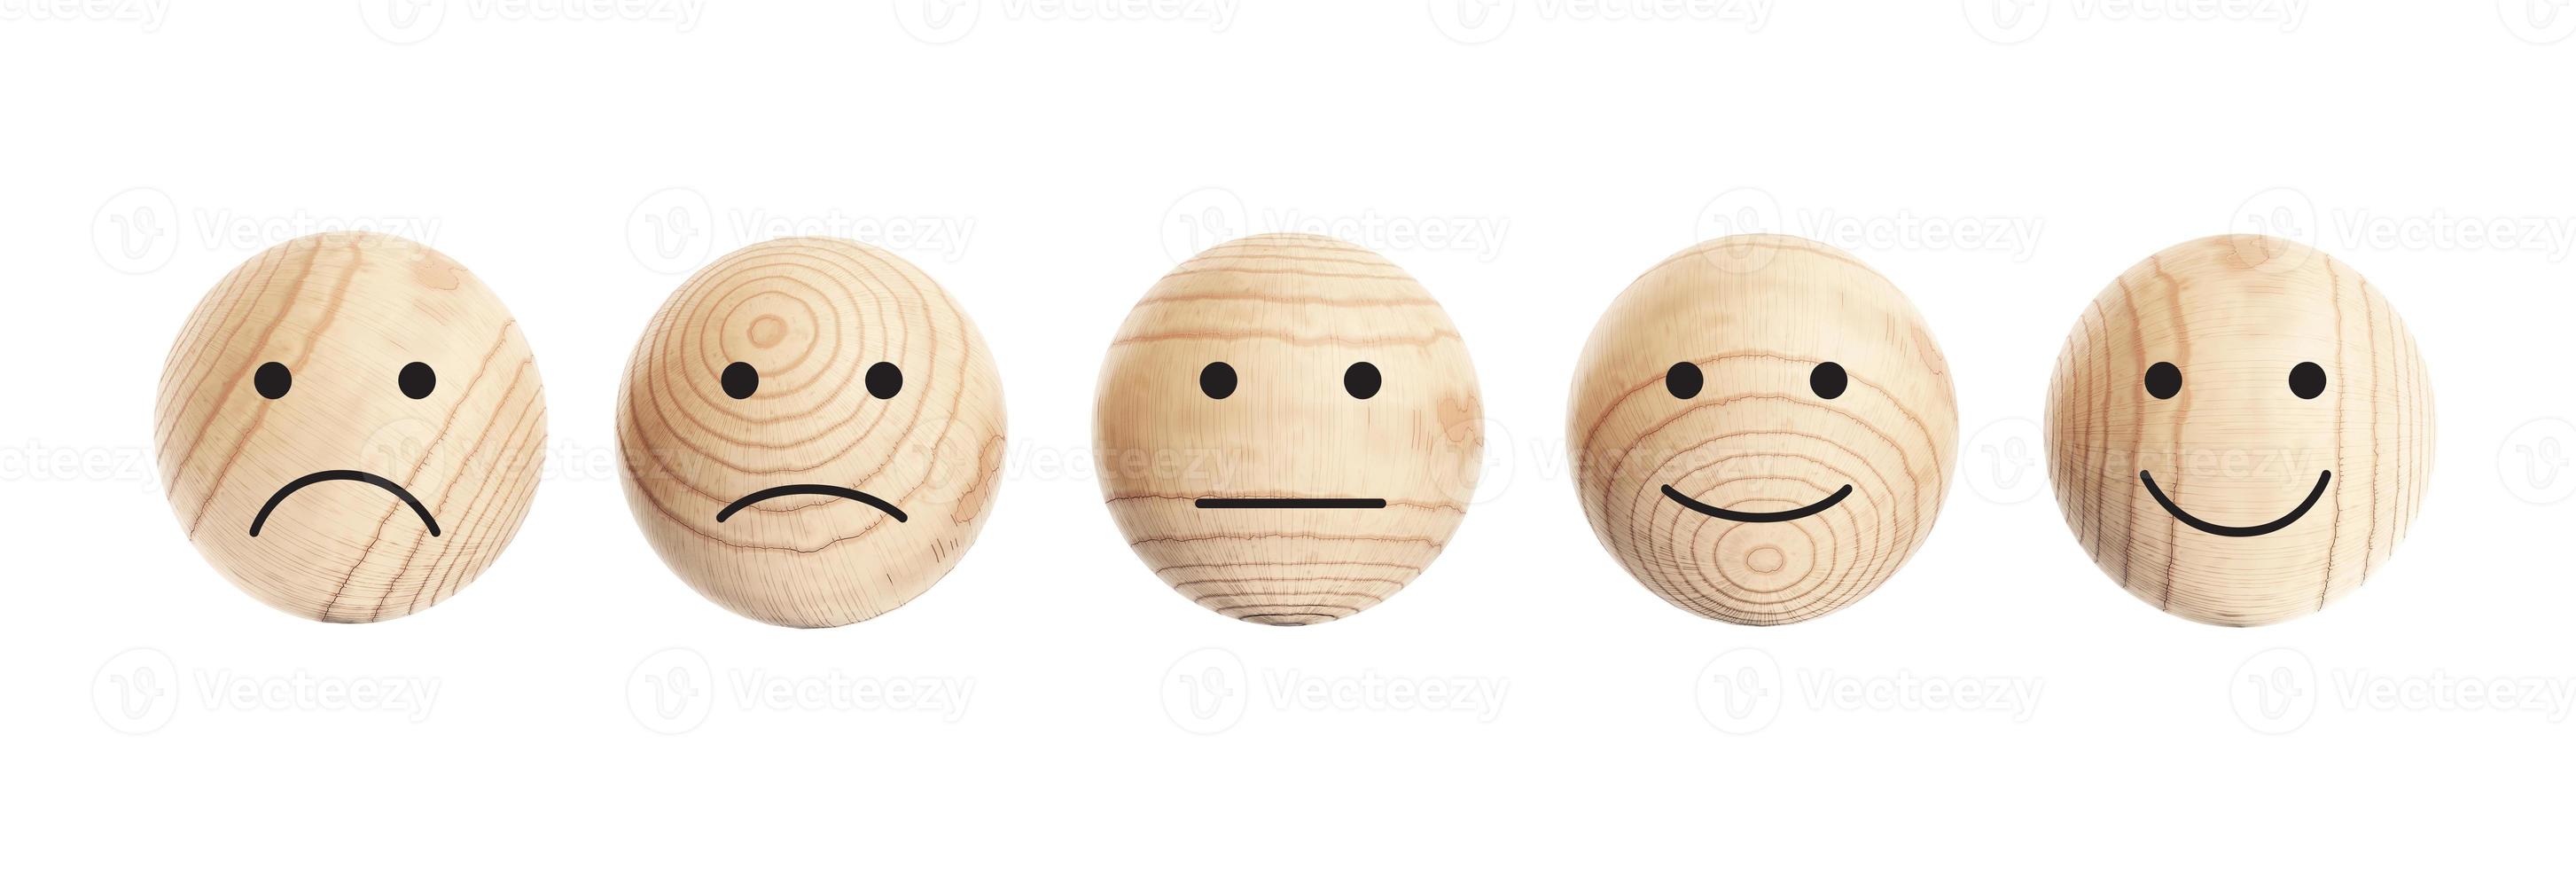 houten ballen met gezicht pictogram geïsoleerd op een witte achtergrond foto